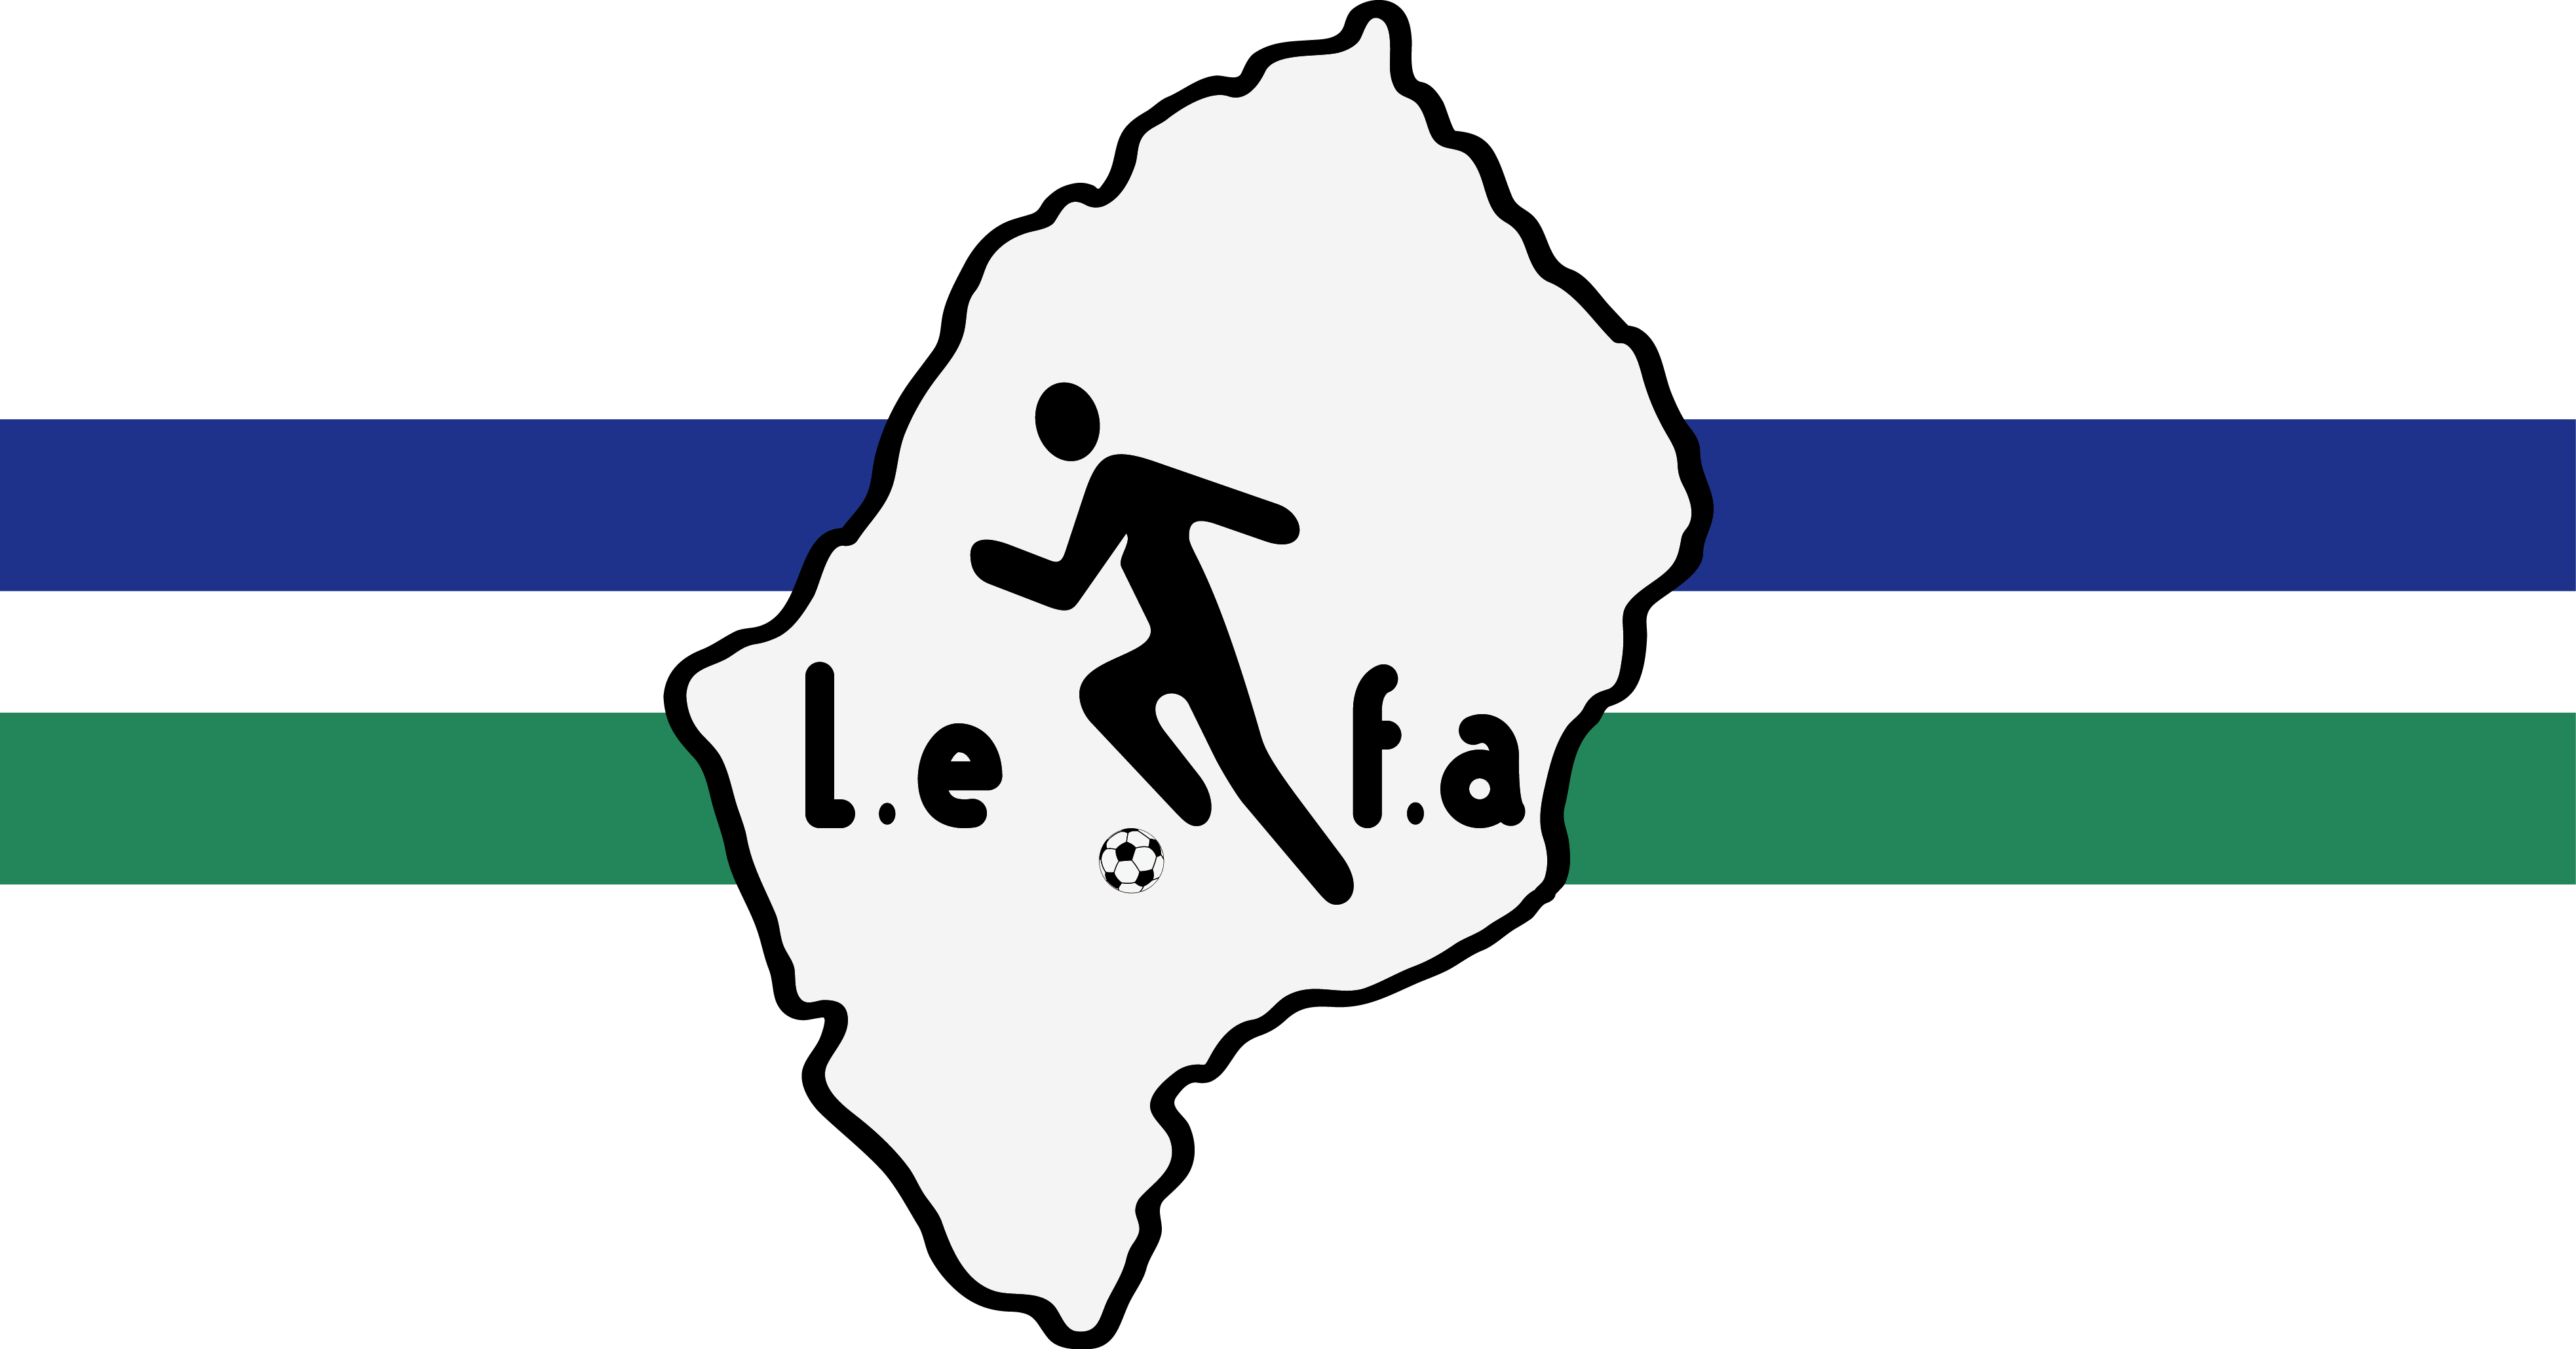 賴索托國家足球隊